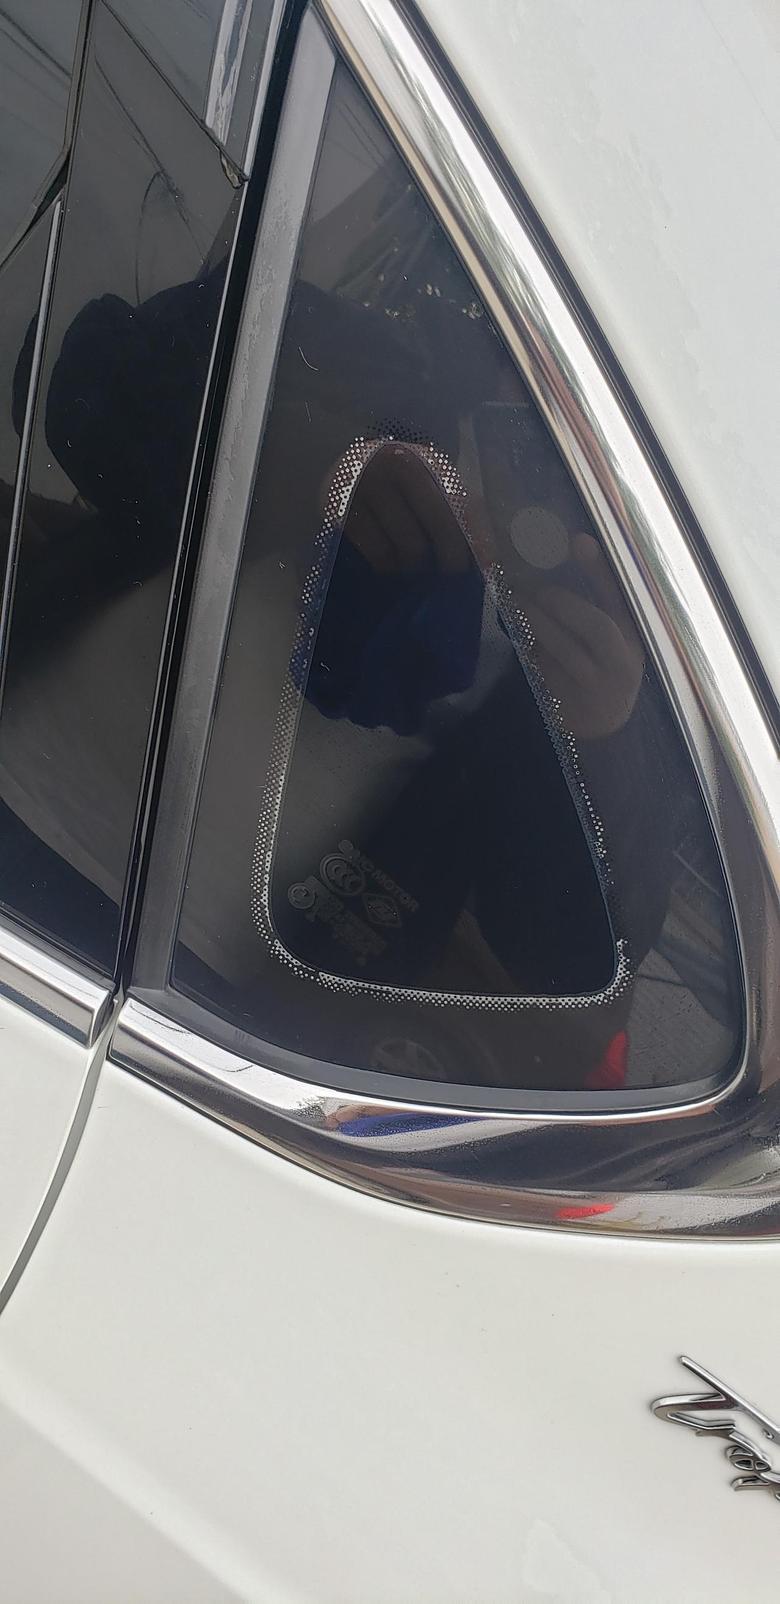 名爵6今天刷车发现驾驶位后面的三角窗黑点都发白了。右侧正常。有知道是啥问题的车友吗？